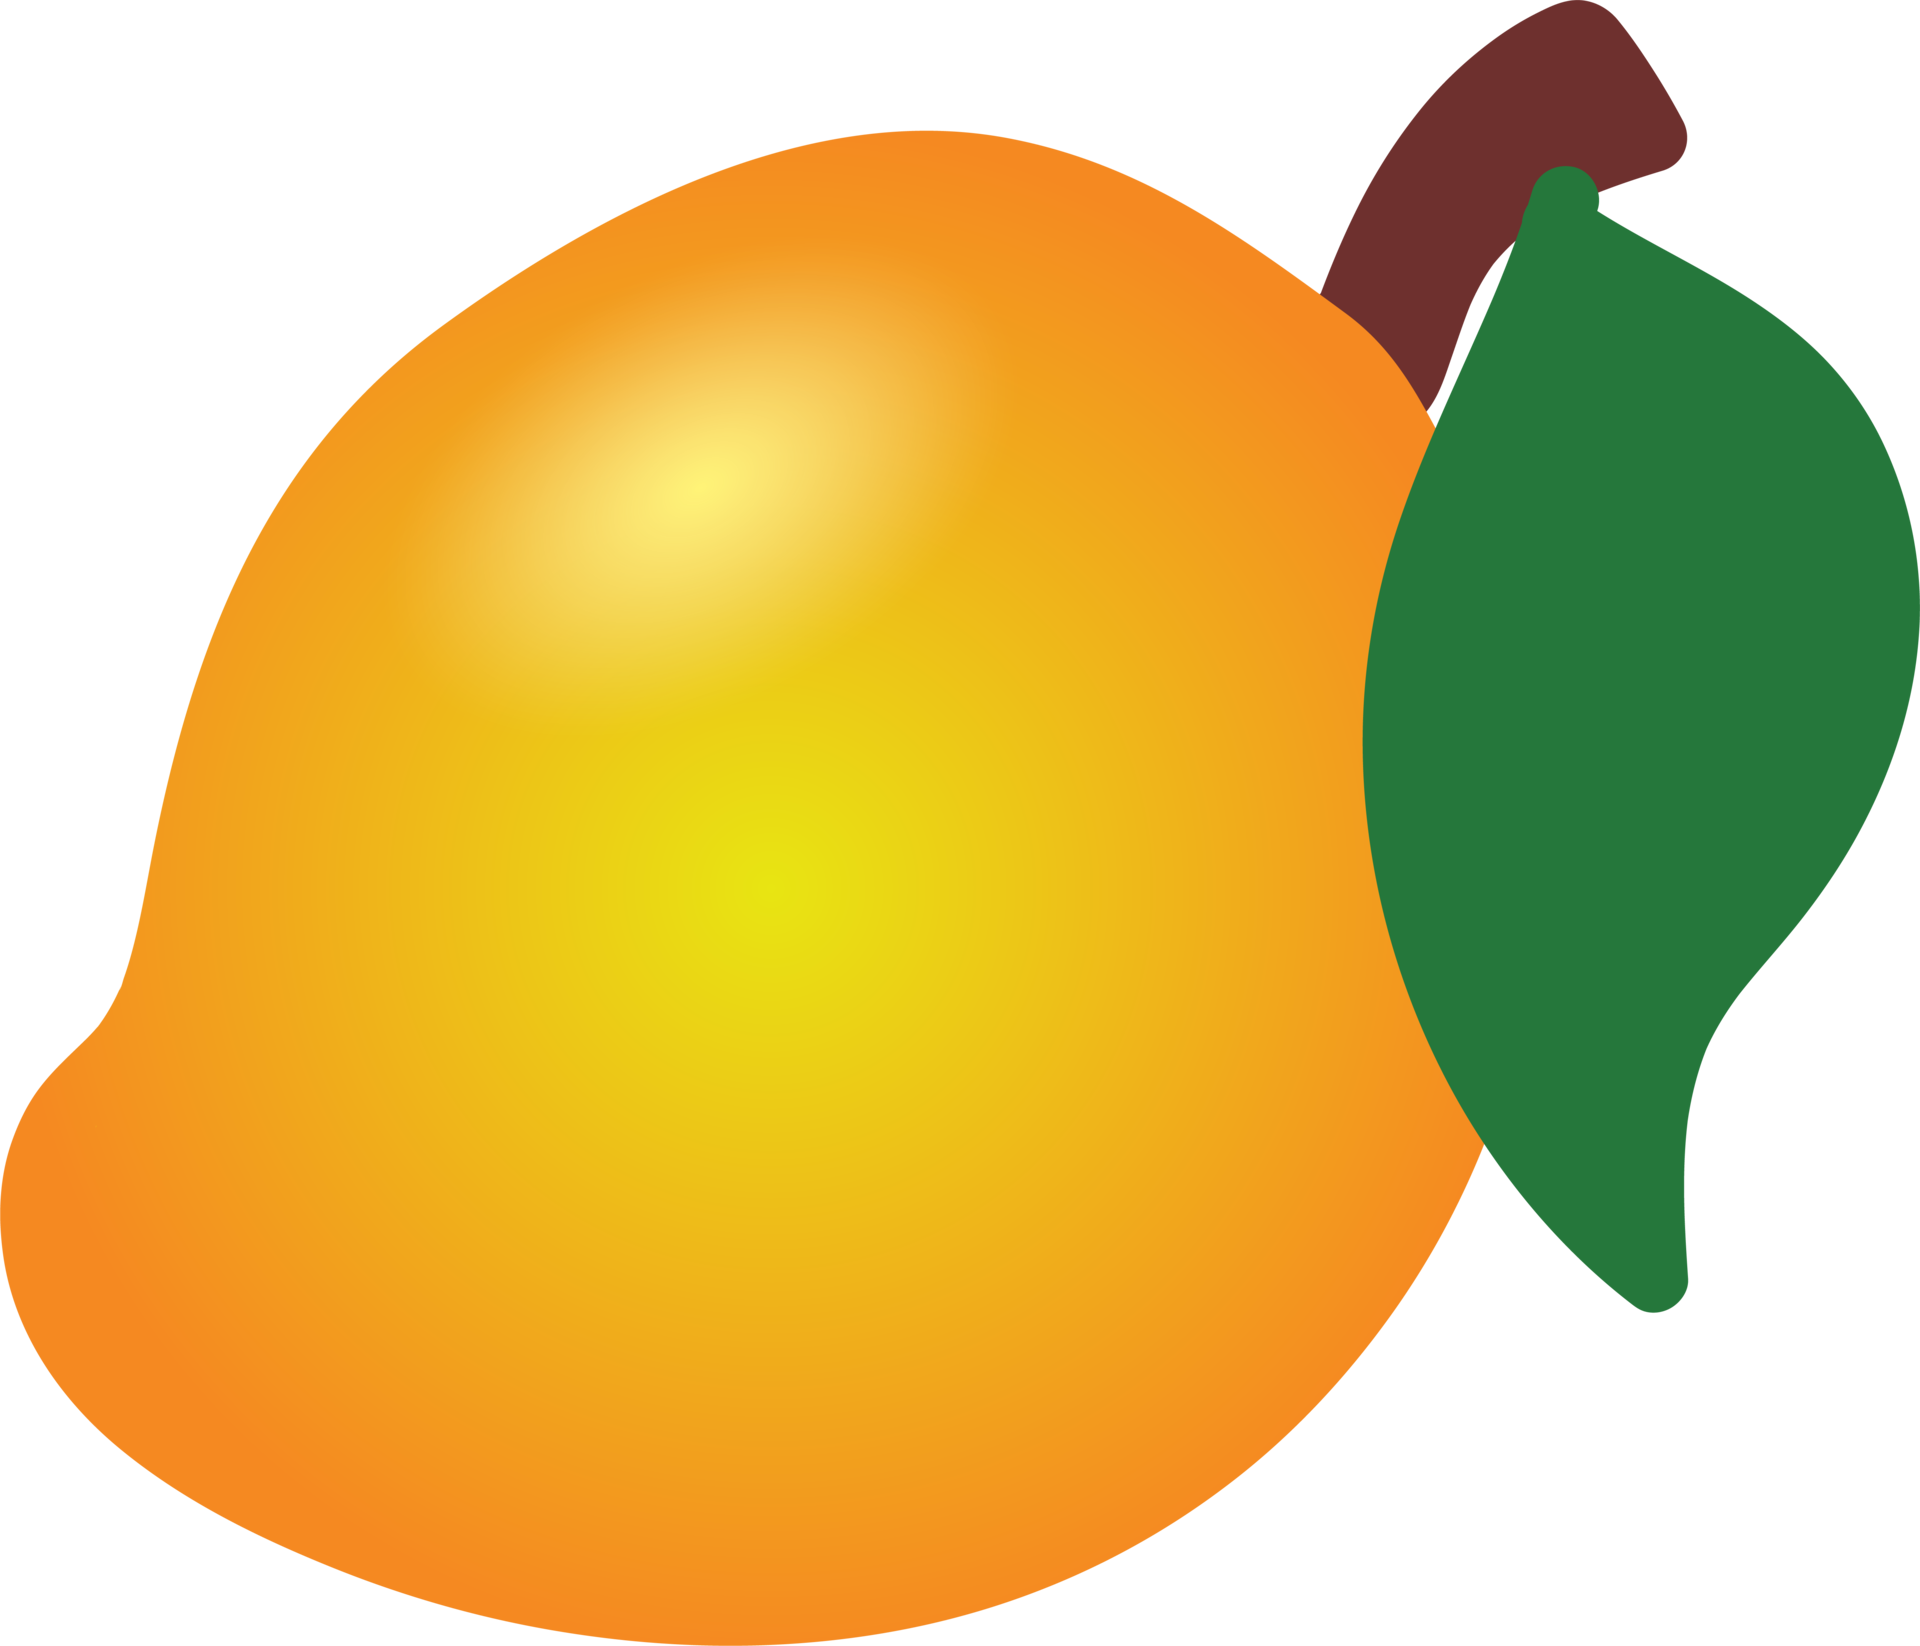 Mango Fruit Image